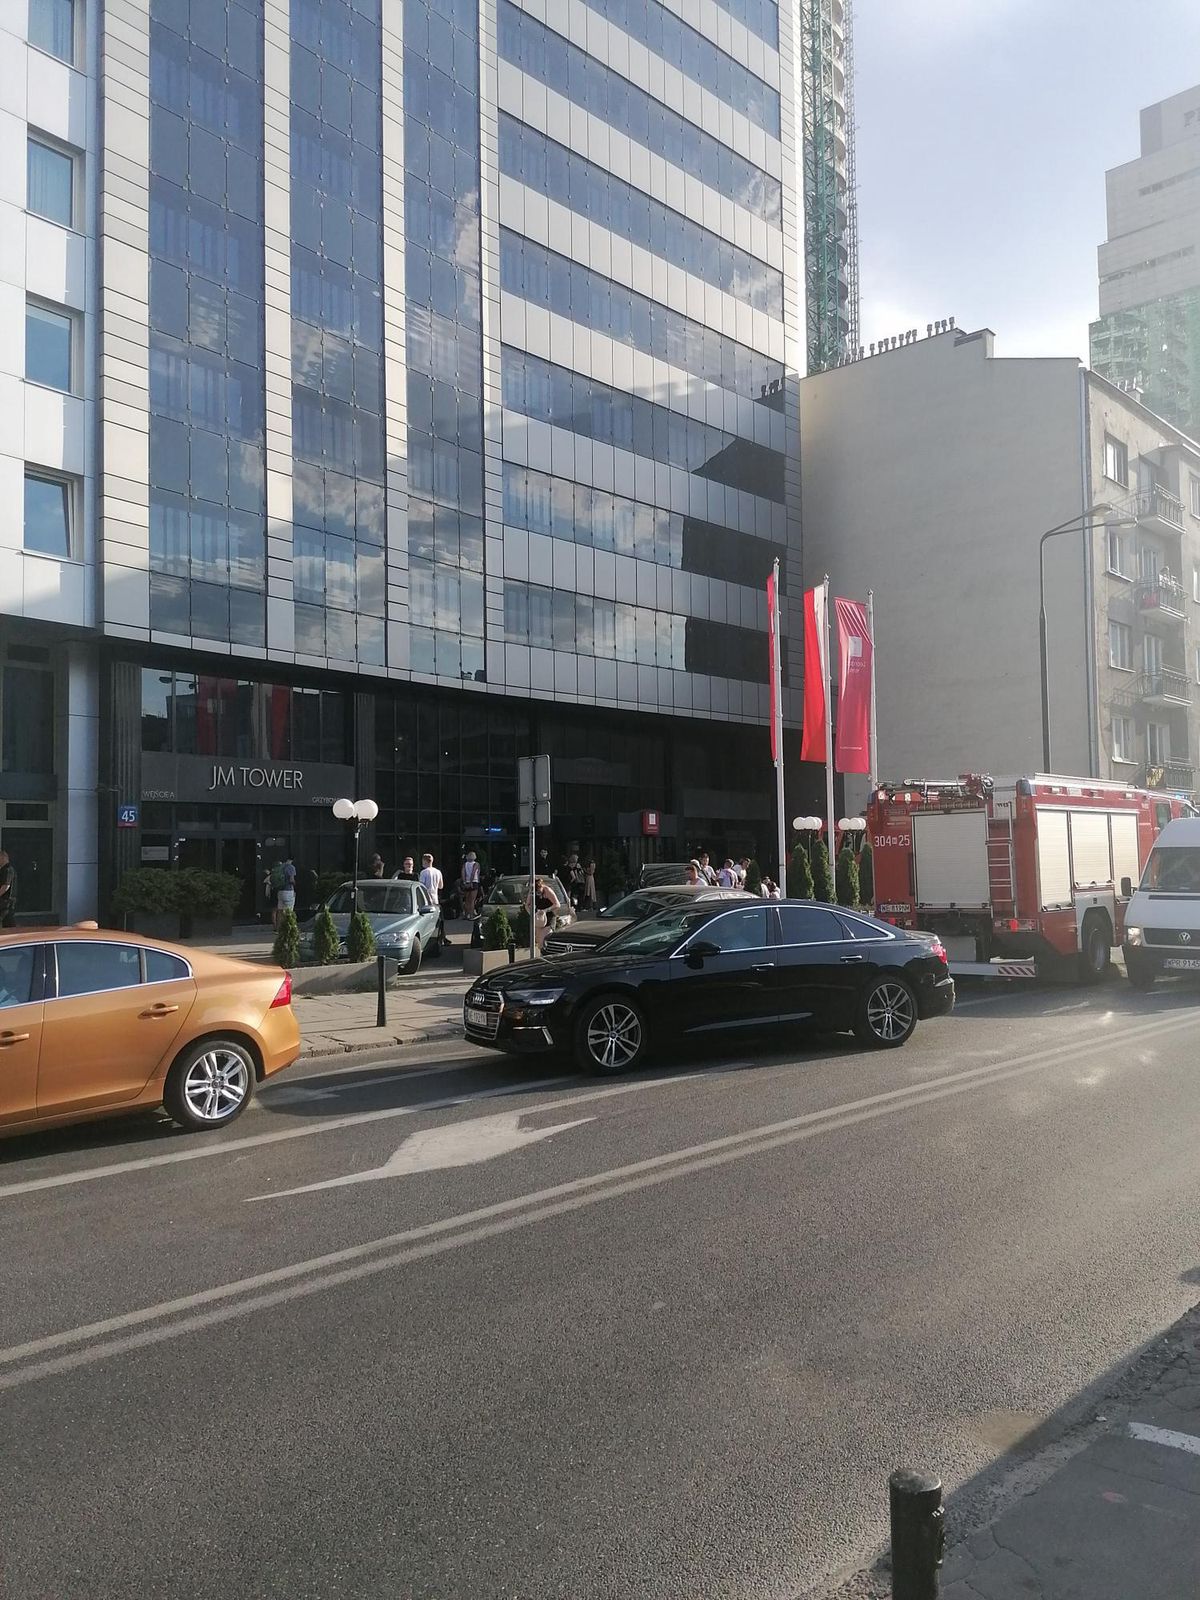 Warszawa. Pożar w hotelu Leonardo. Brawa dla ochrony